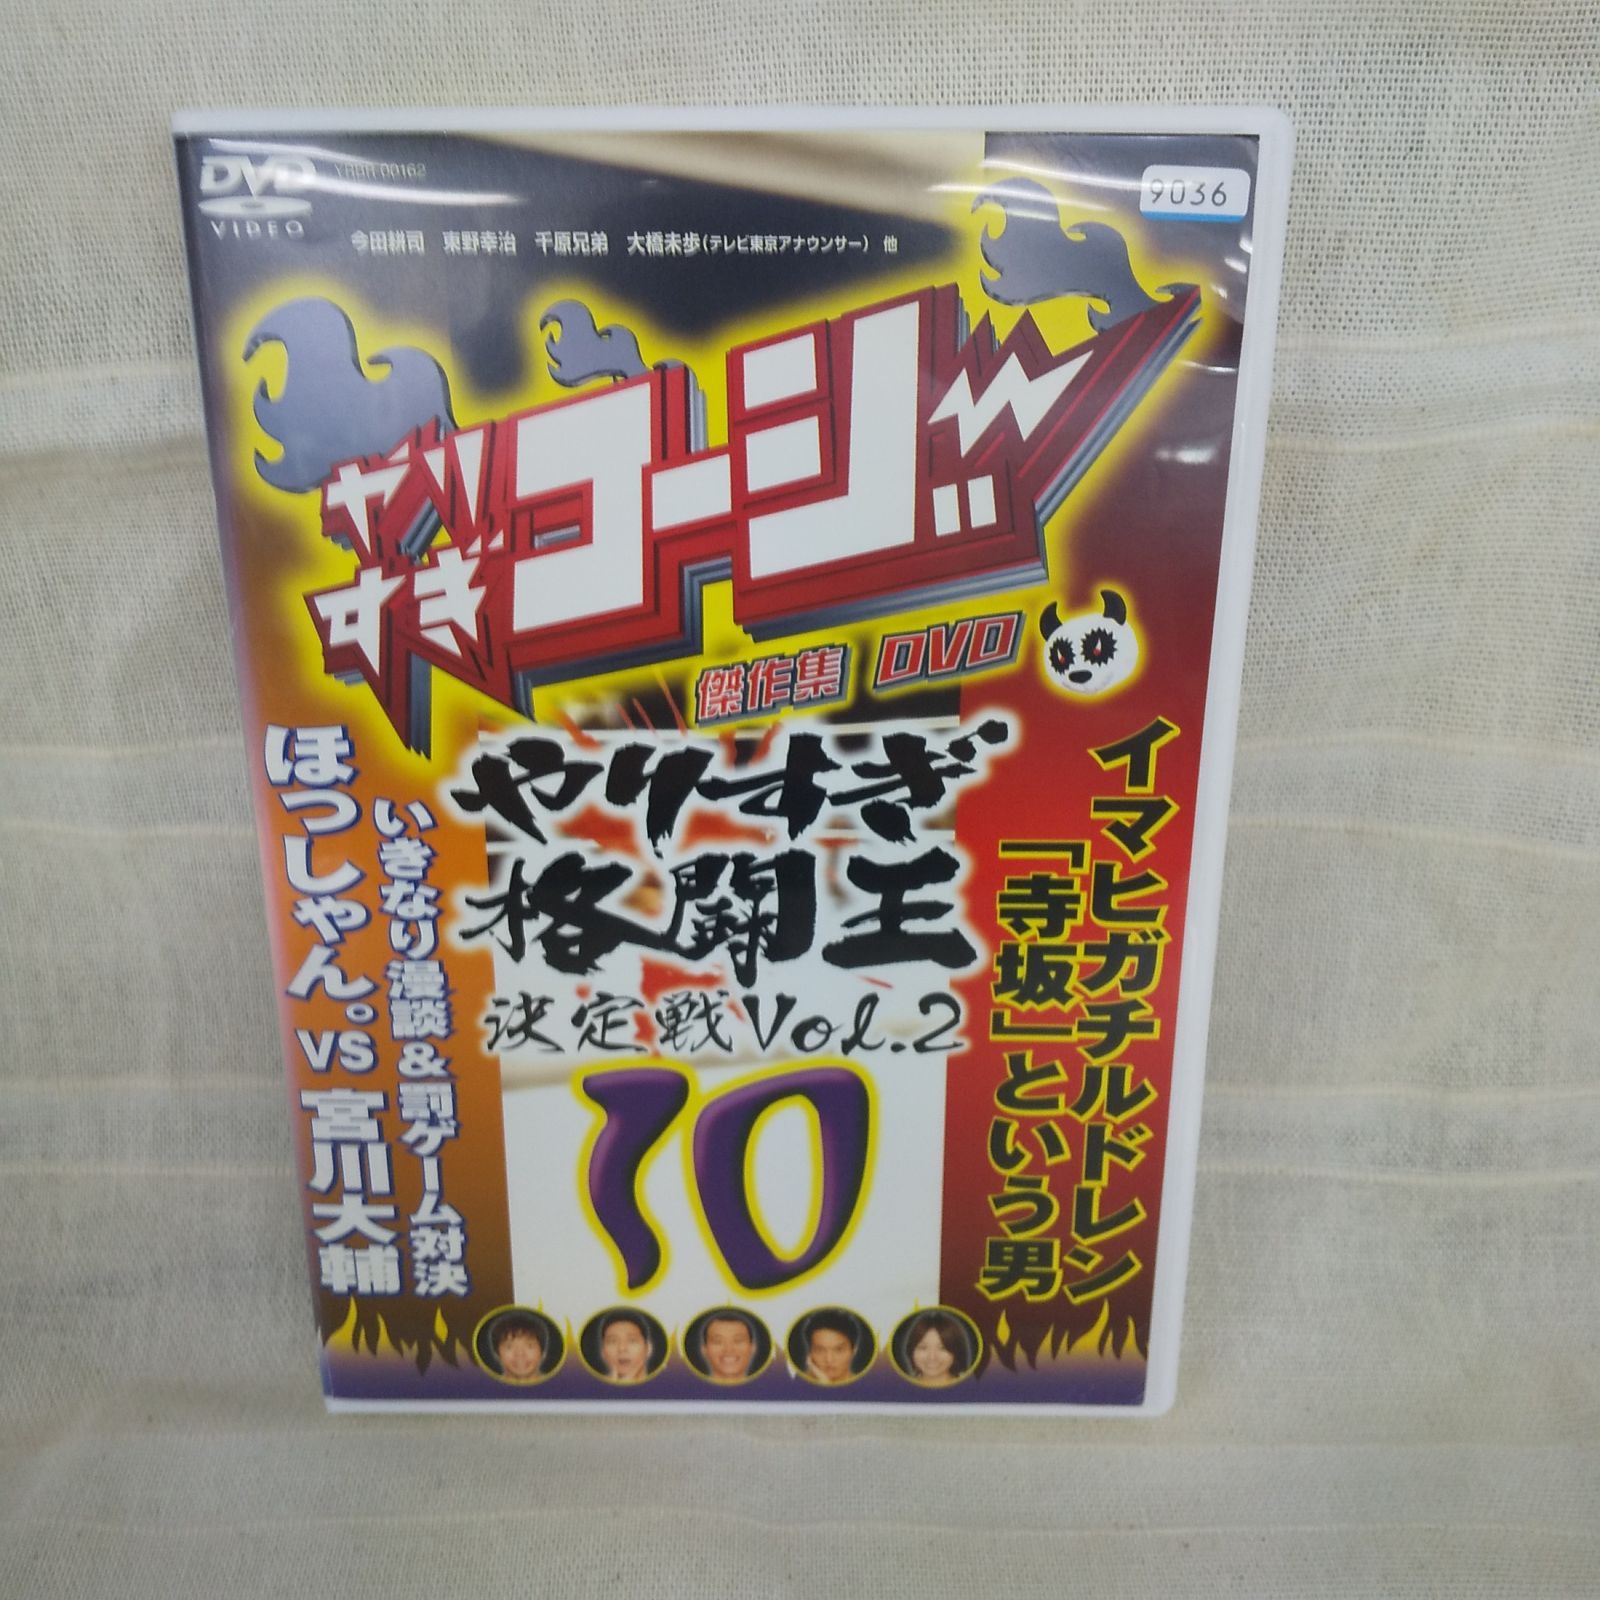 やりすぎコージー 10 傑作集 やりすぎ格闘王決定戦 Vol.2 レンタル専用